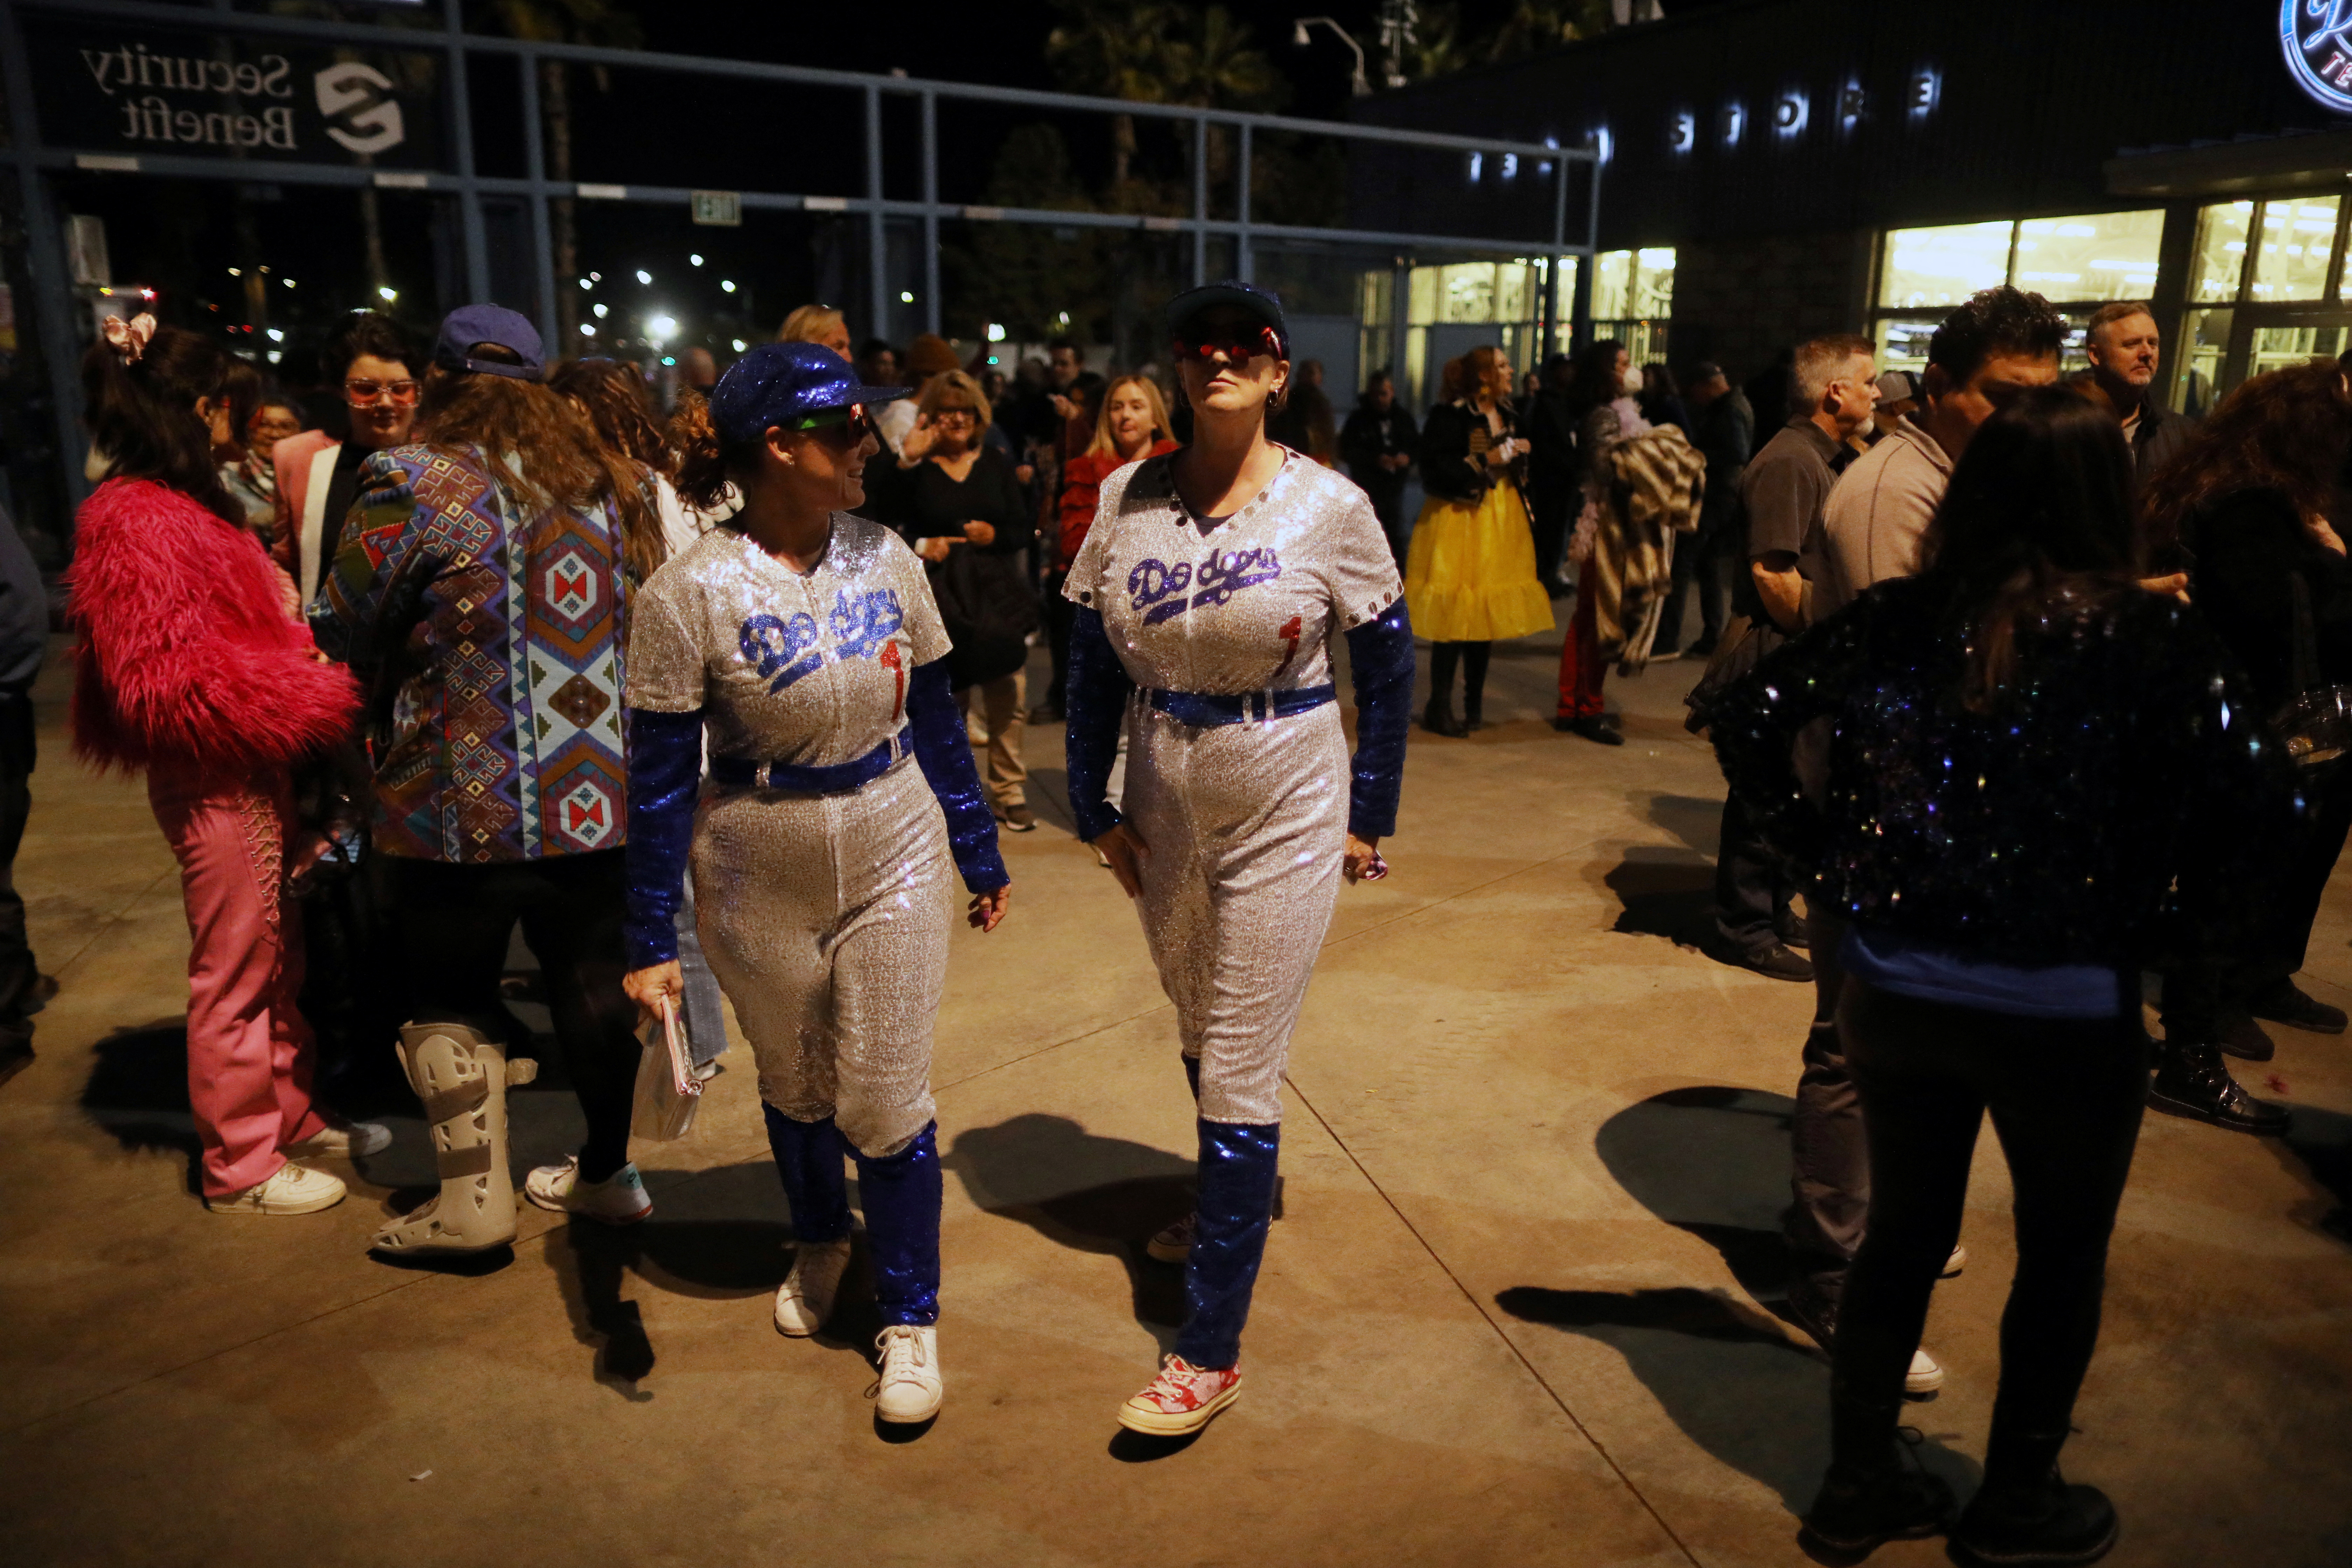 Los fanáticos entran para ver a Elton John actuar, vestidas con el icónico traje de los Dodgers en homenaje al cantante (REUTERS/David Swanson)
